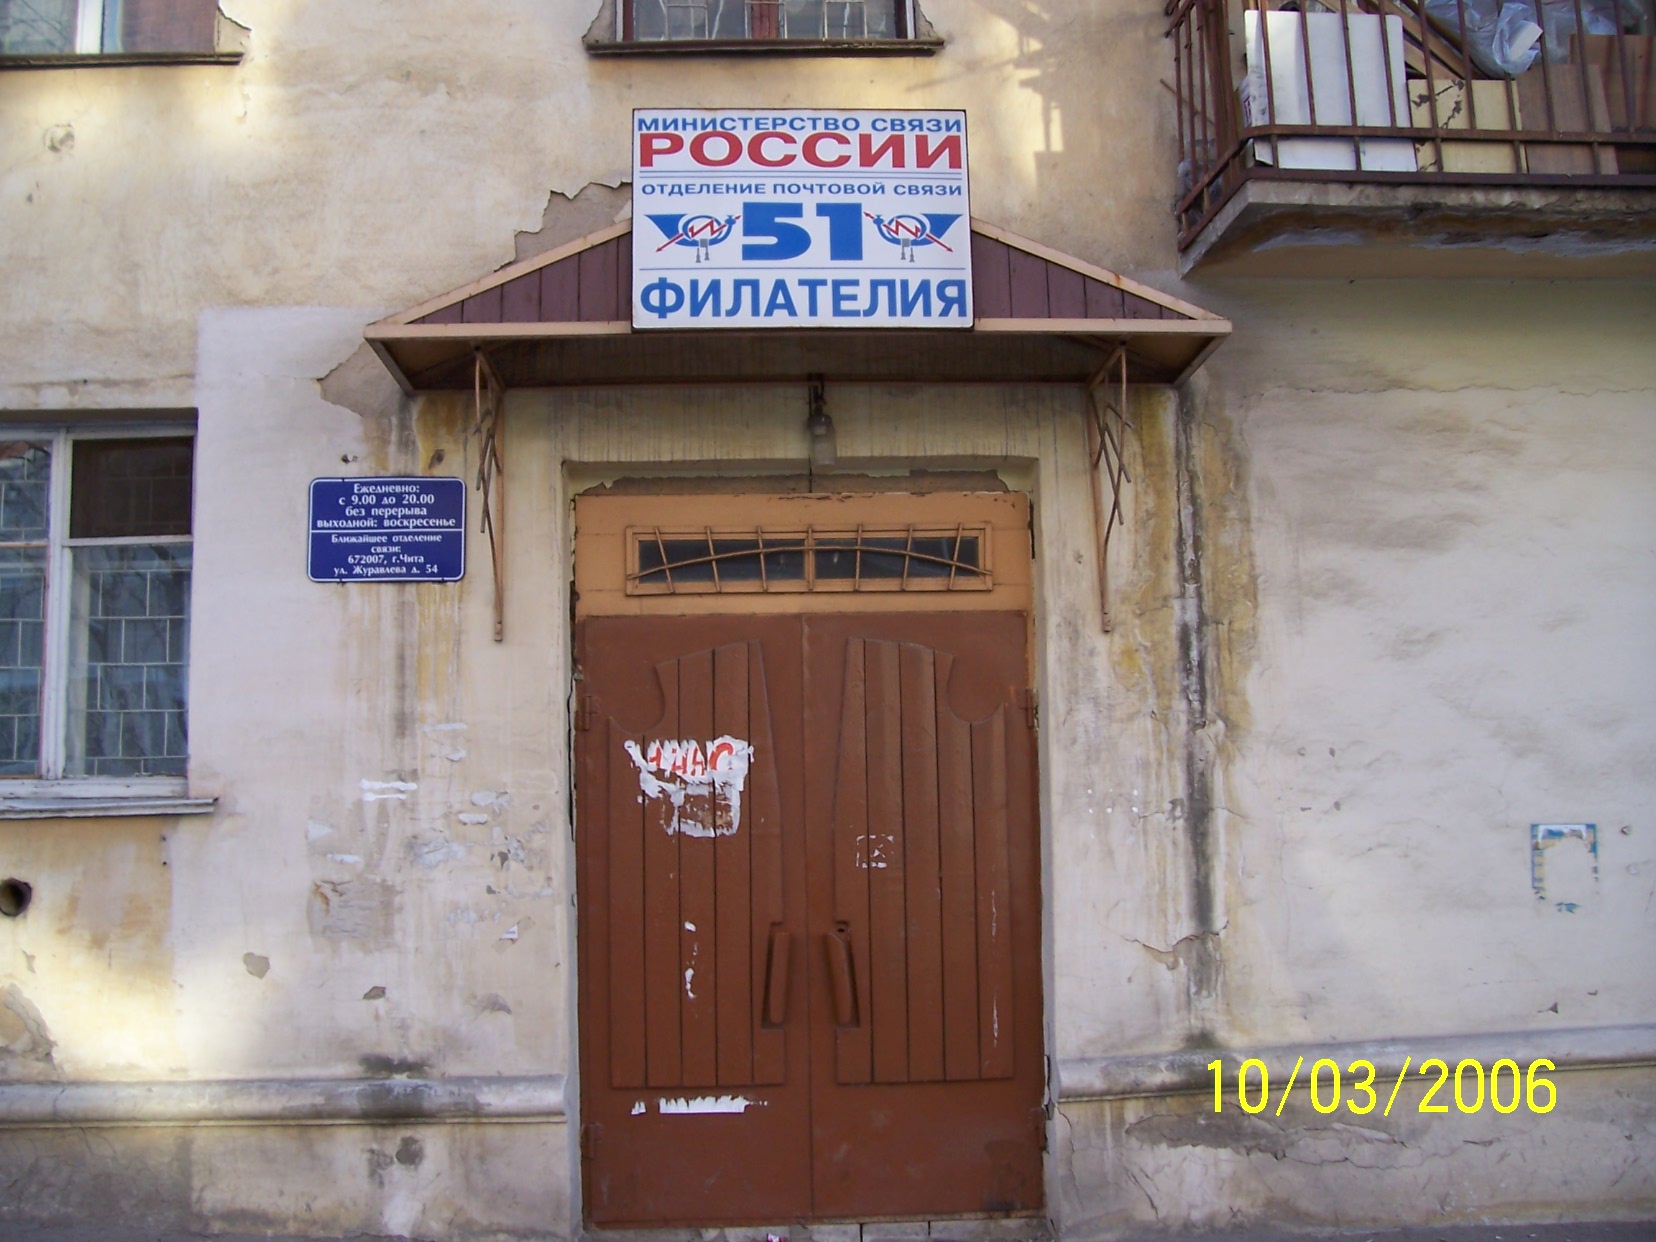 ФАСАД, отделение почтовой связи 672051, Забайкальский край, Чита